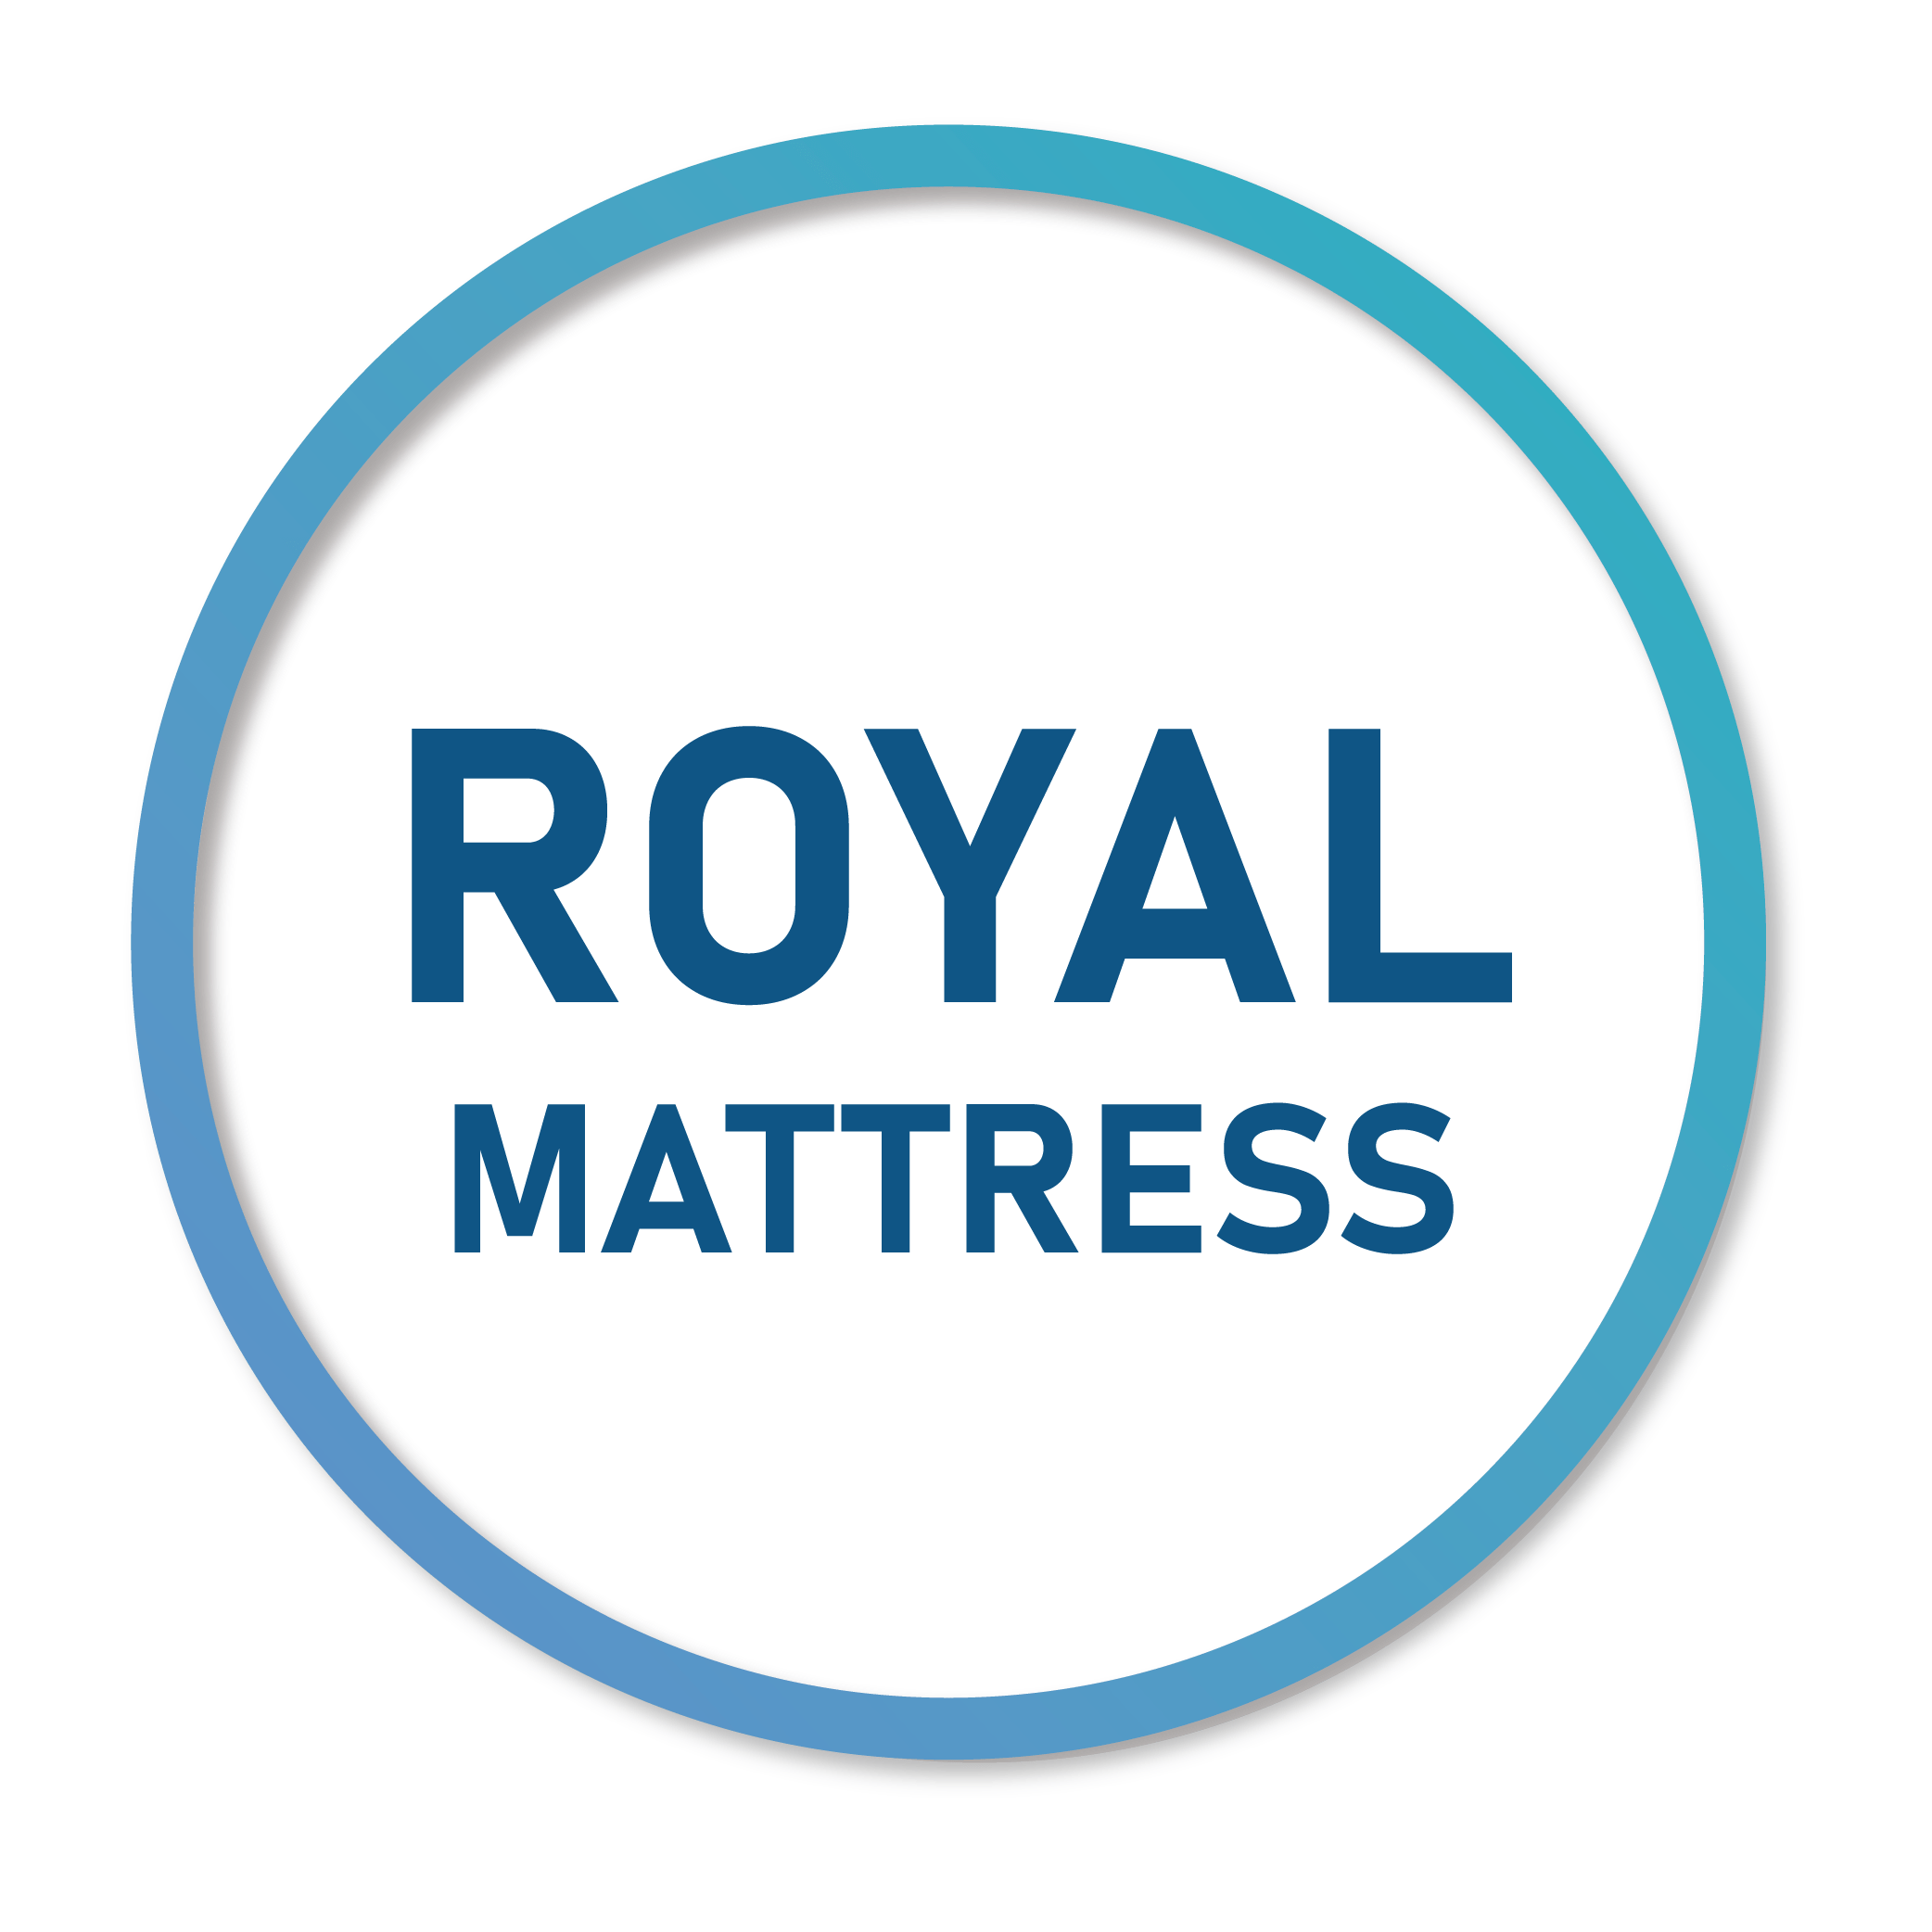 Royal mattress